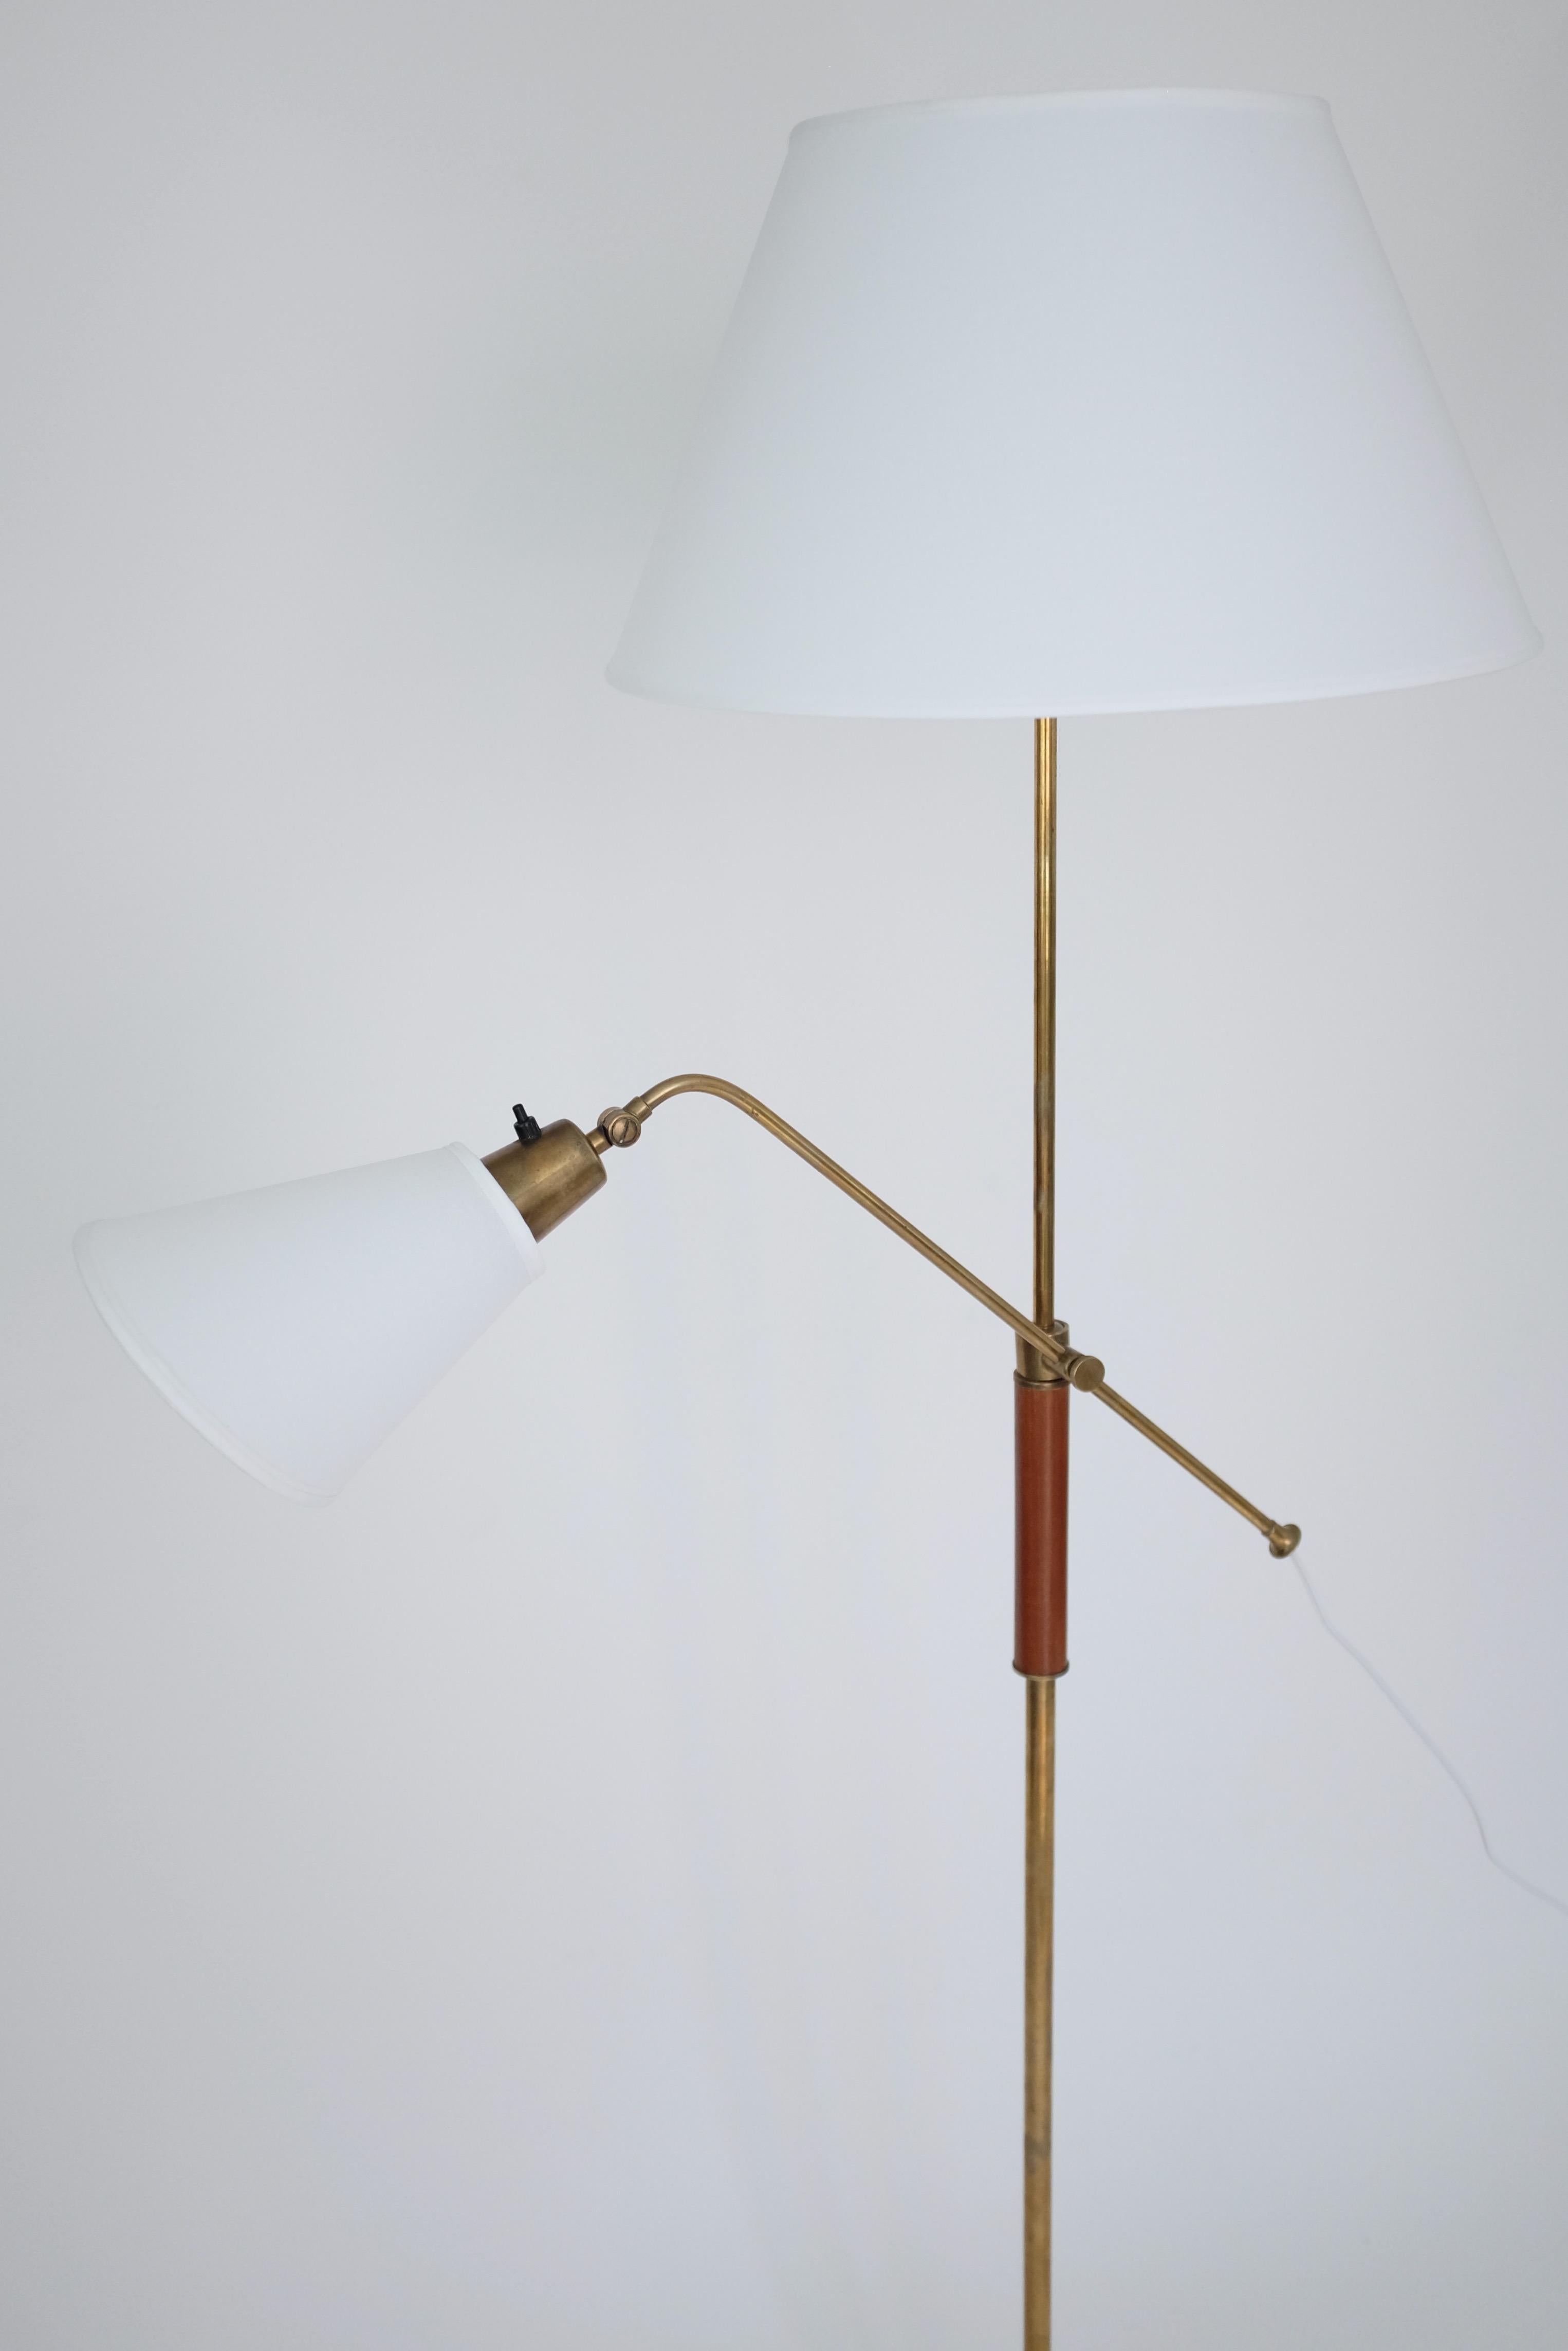 Impressionnant lampadaire à deux bras en laiton et bois par Bertil Brisborg pour Nordiska Kompaniet. Fabriqué dans les années 1950, le concepteur a occupé le poste d'architecte en chef du service d'éclairage pendant de nombreuses années. La lampe